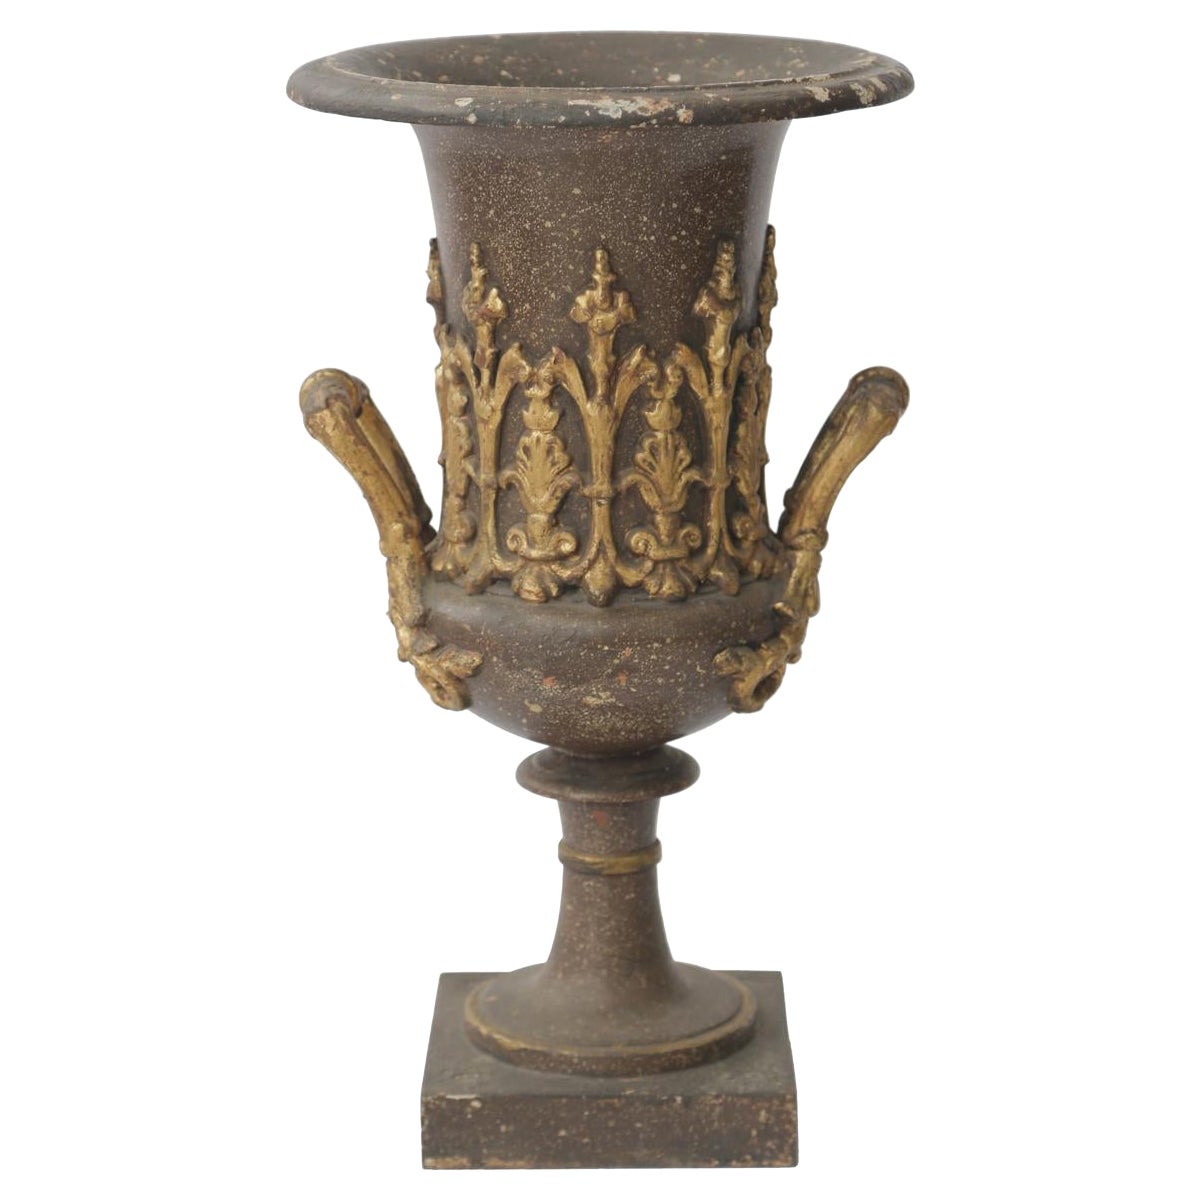 Bronze- Campana-Urne aus dem frühen 19. Jahrhundert